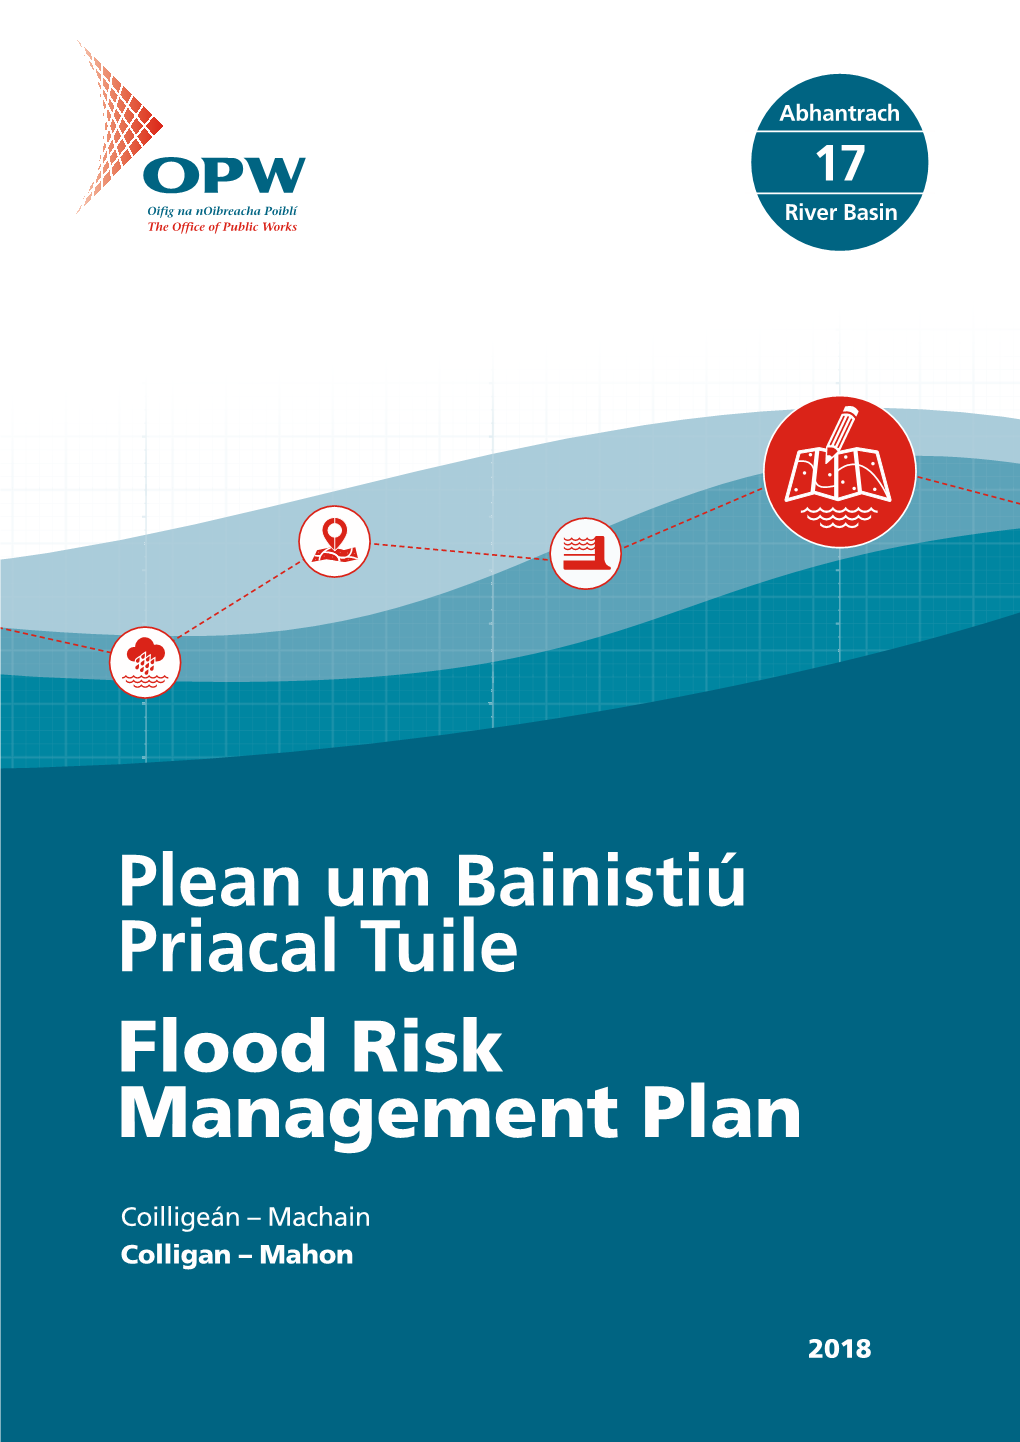 3 Preliminary Flood Risk Assessment